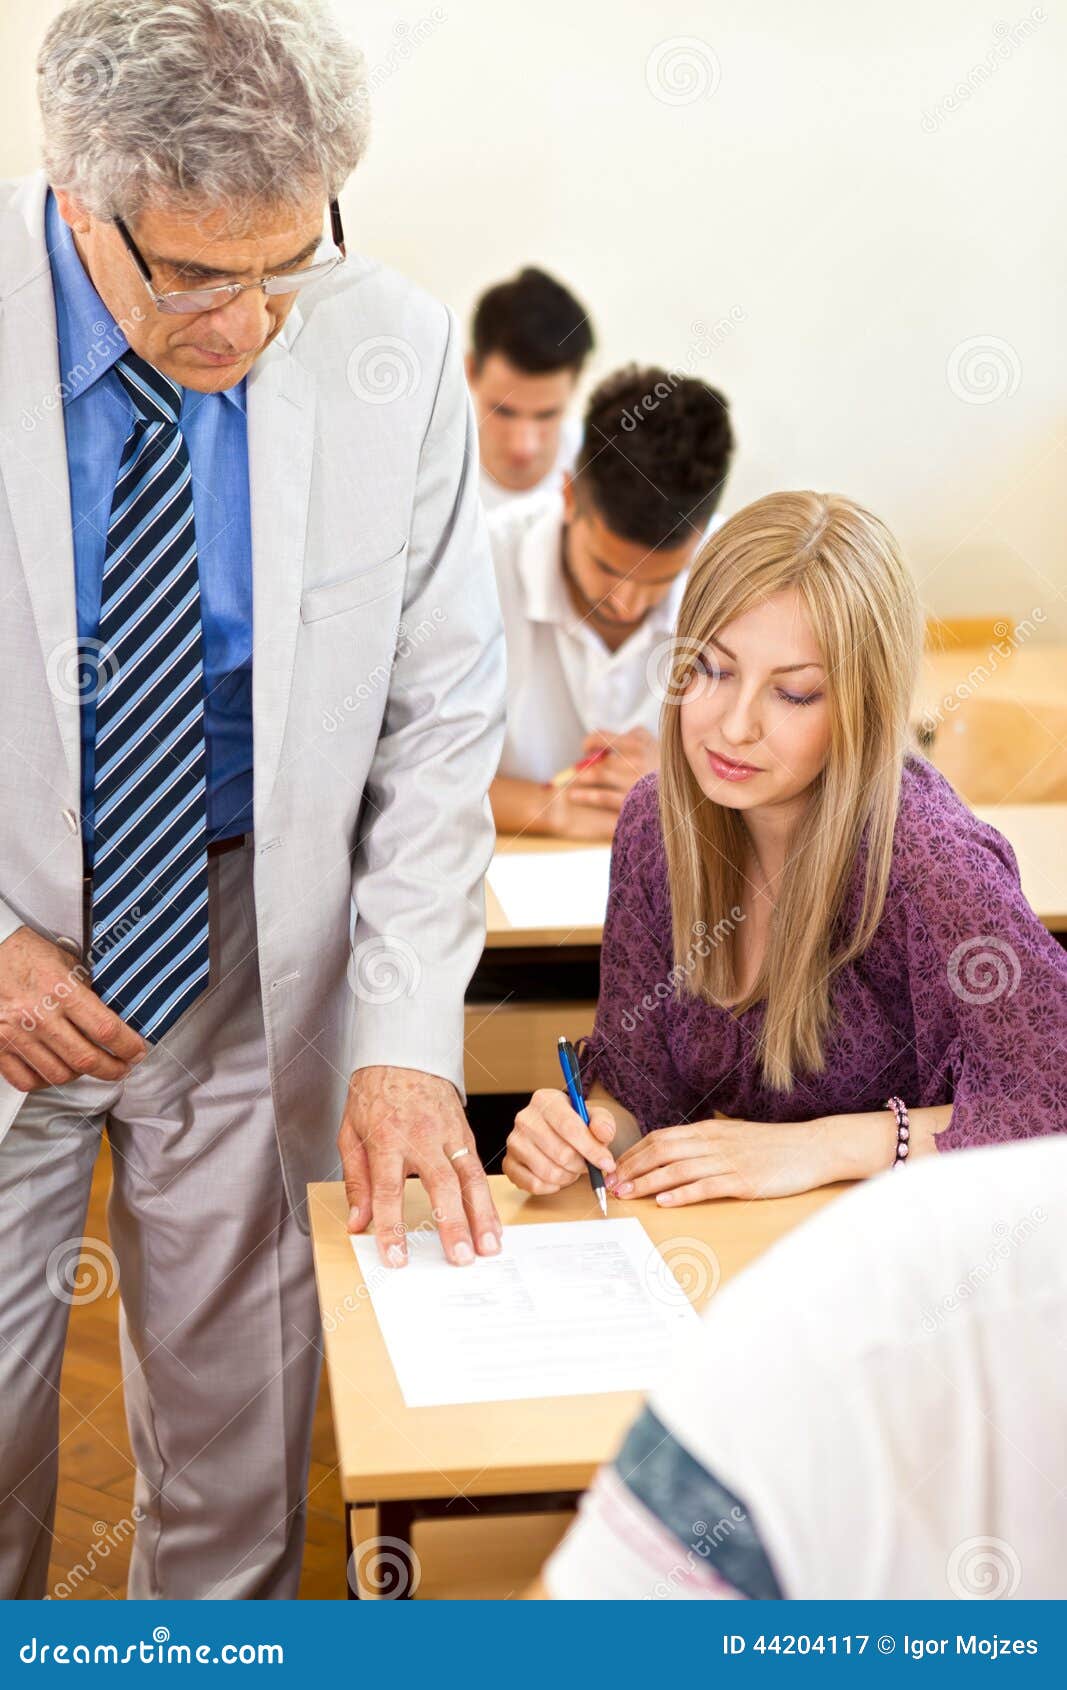 teacher observes his students